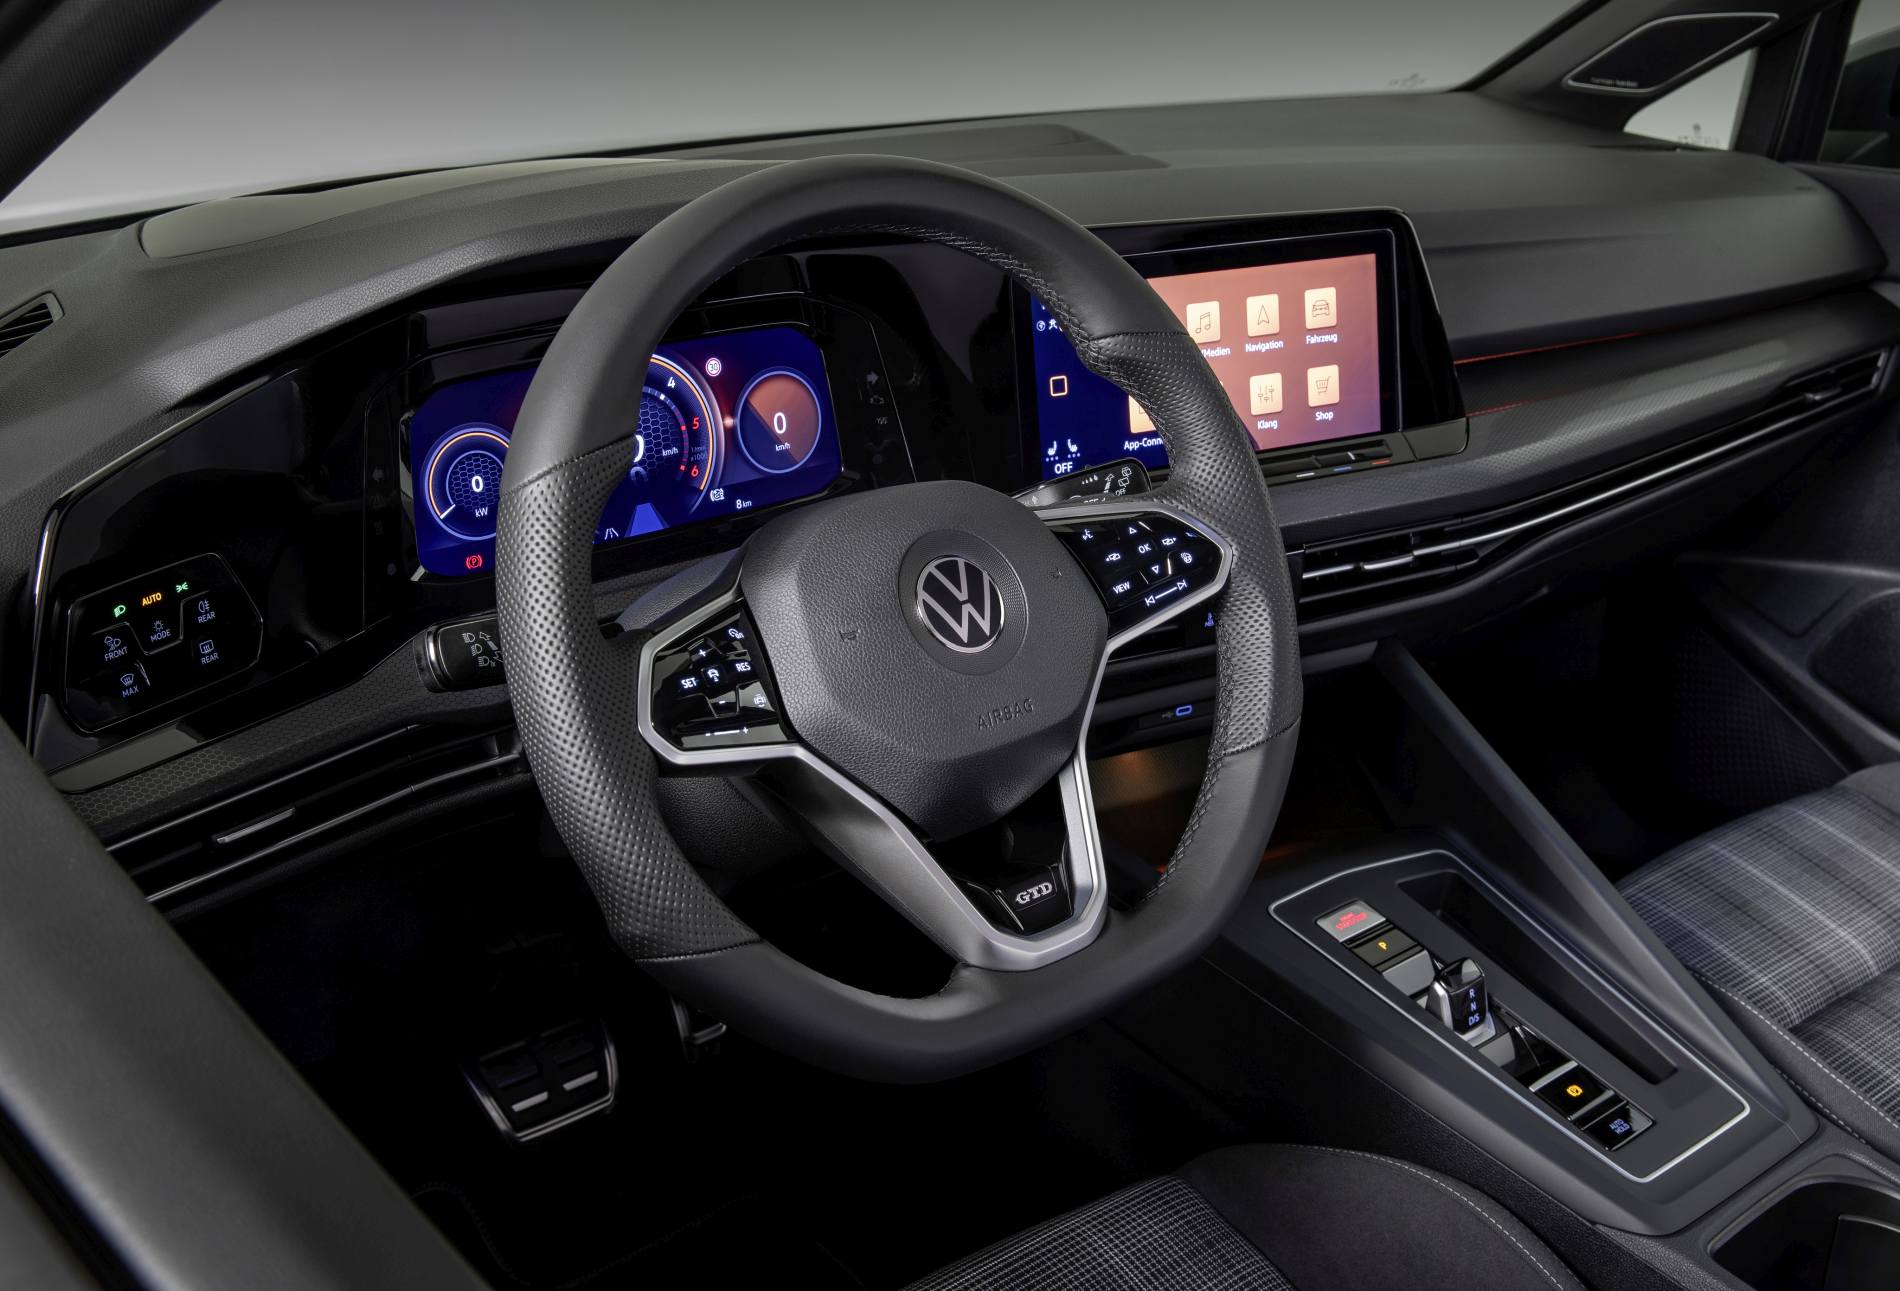 The new Volkswagen Golf GTD